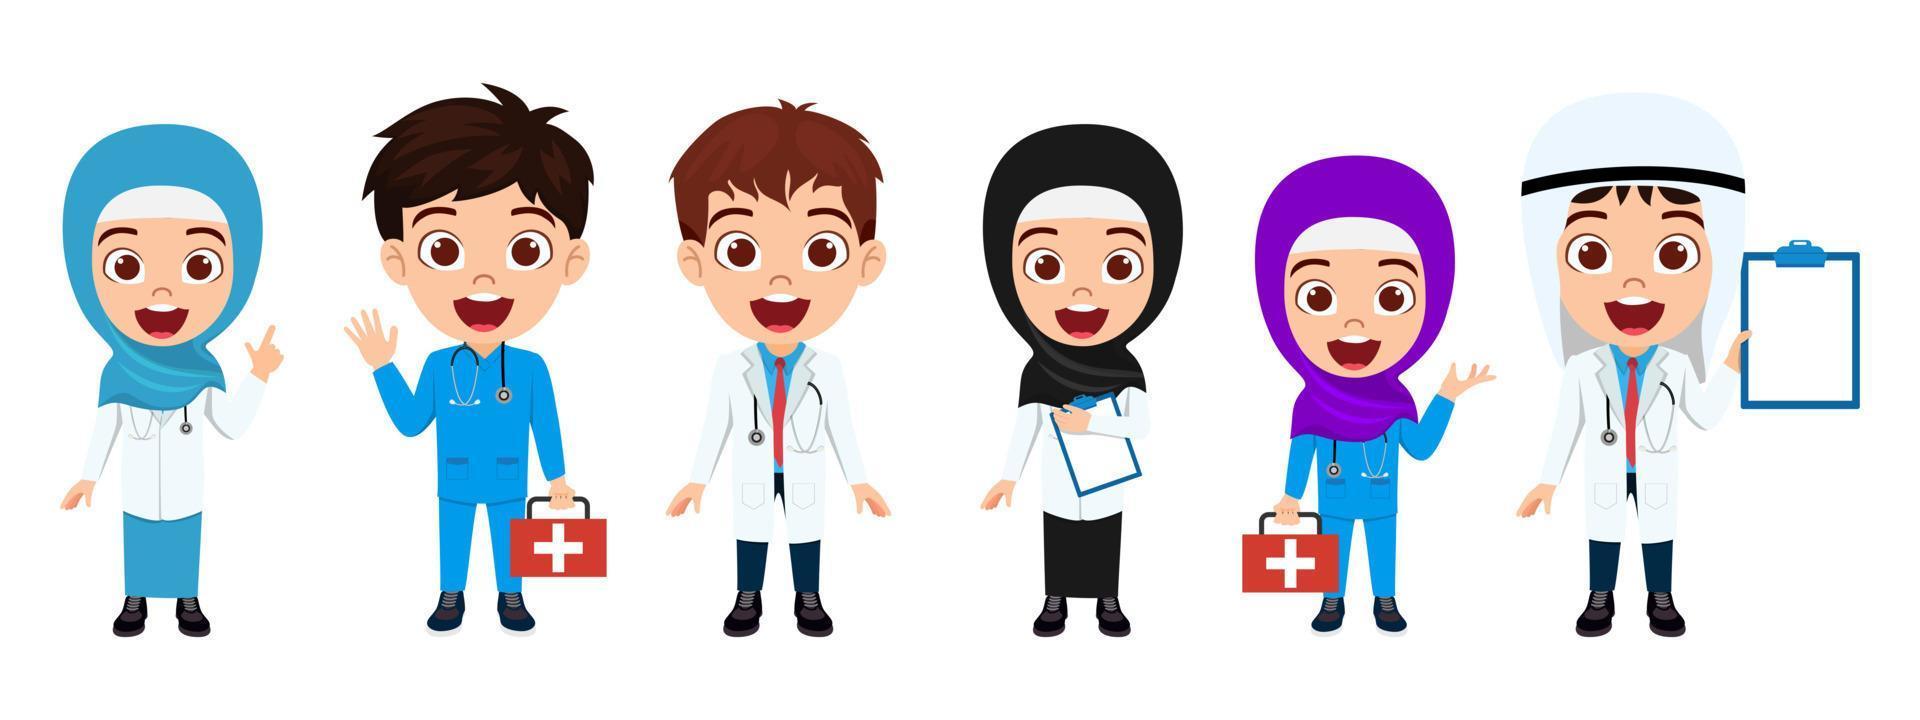 felice ragazzo carino ragazzo e ragazza dottore infermiere personaggio che indossa un abito da dottore e infermiera arabo musulmano in piedi con espressione allegra vettore